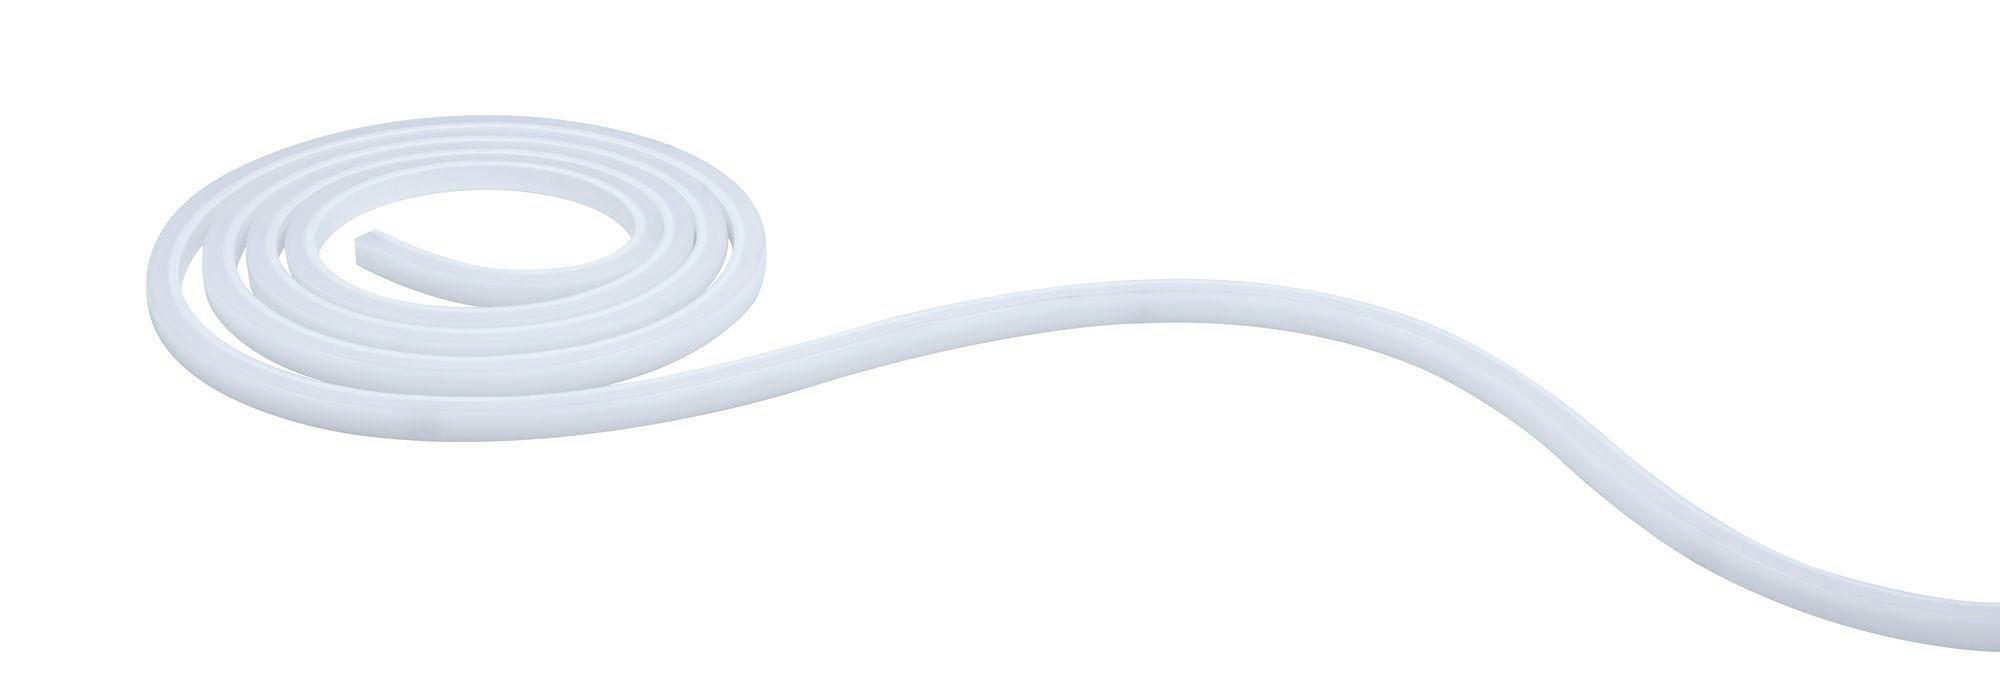 LED-STRIP 150 cm  - Weiß, Basics, Kunststoff (150cm) - Paulmann